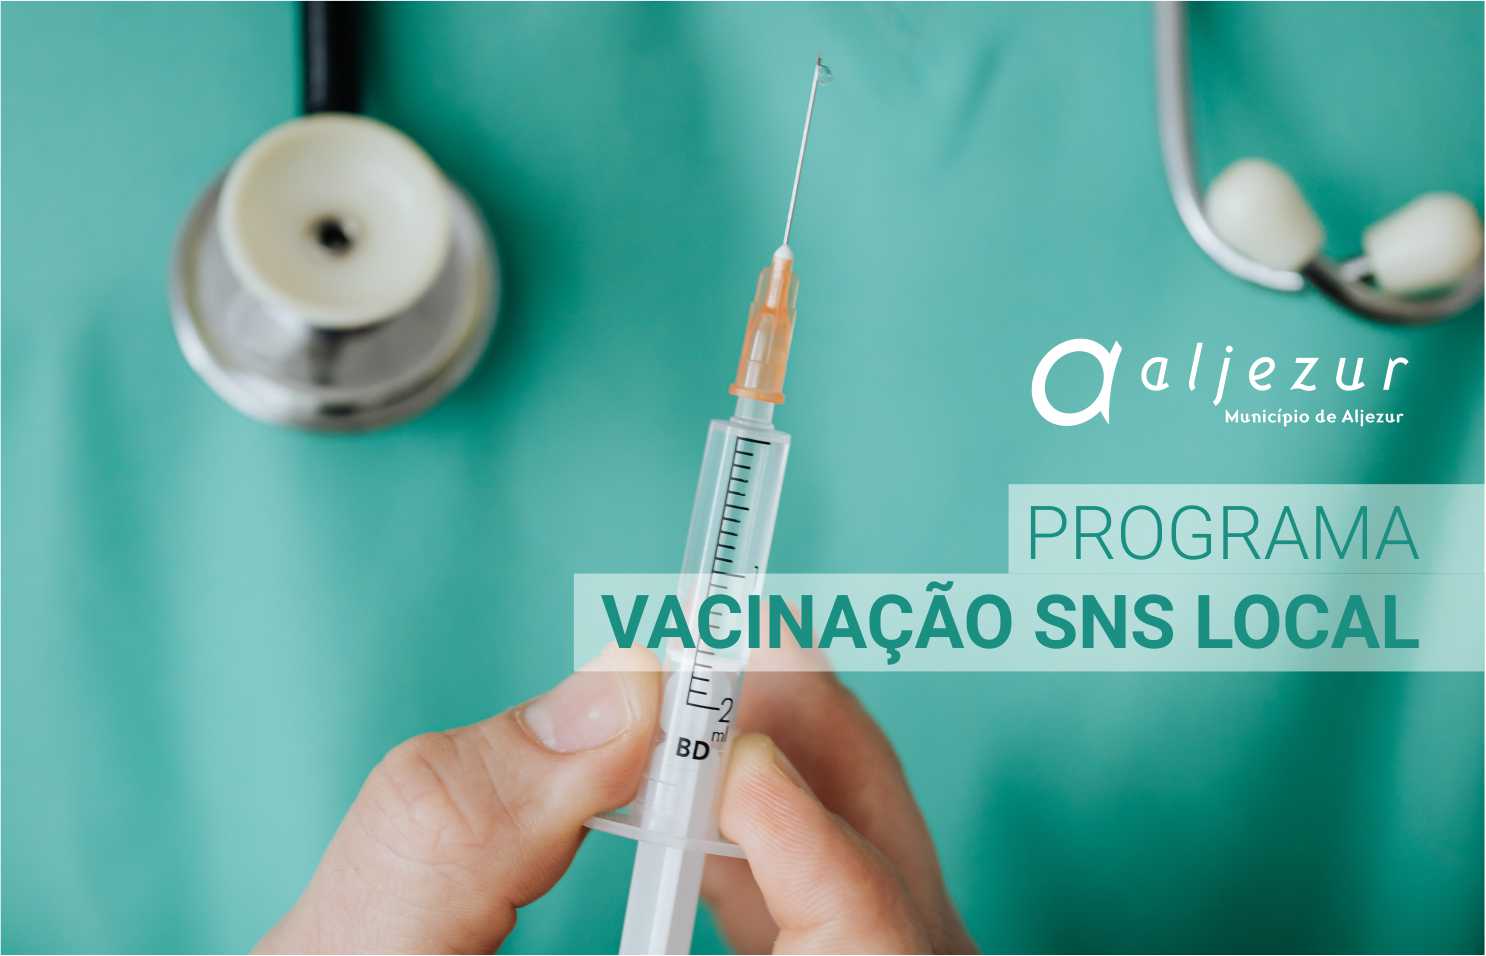 Aljezur associa-se ao Programa “Vacinação SNS Local"